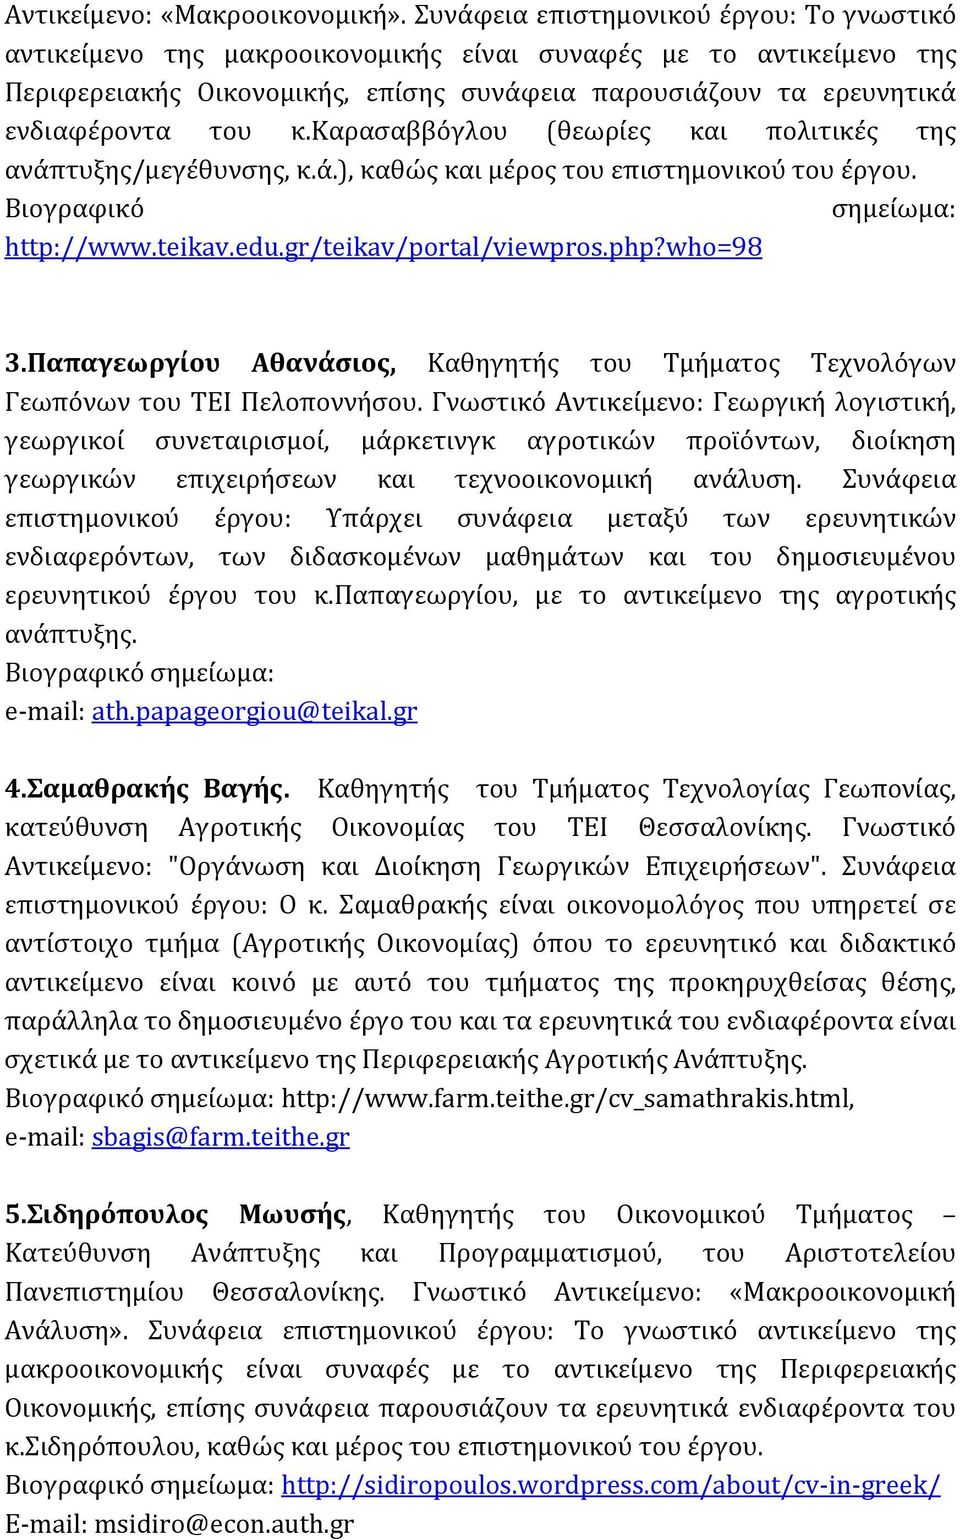 καρασαββόγλου (θεωρίες και πολιτικές της ανάπτυξης/μεγέθυνσης, κ.ά.), καθώς και μέρος του επιστημονικού του έργου. Βιογραφικό σημείωμα: http://www.teikav.edu.gr/teikav/portal/viewpros.php?who=98 3.